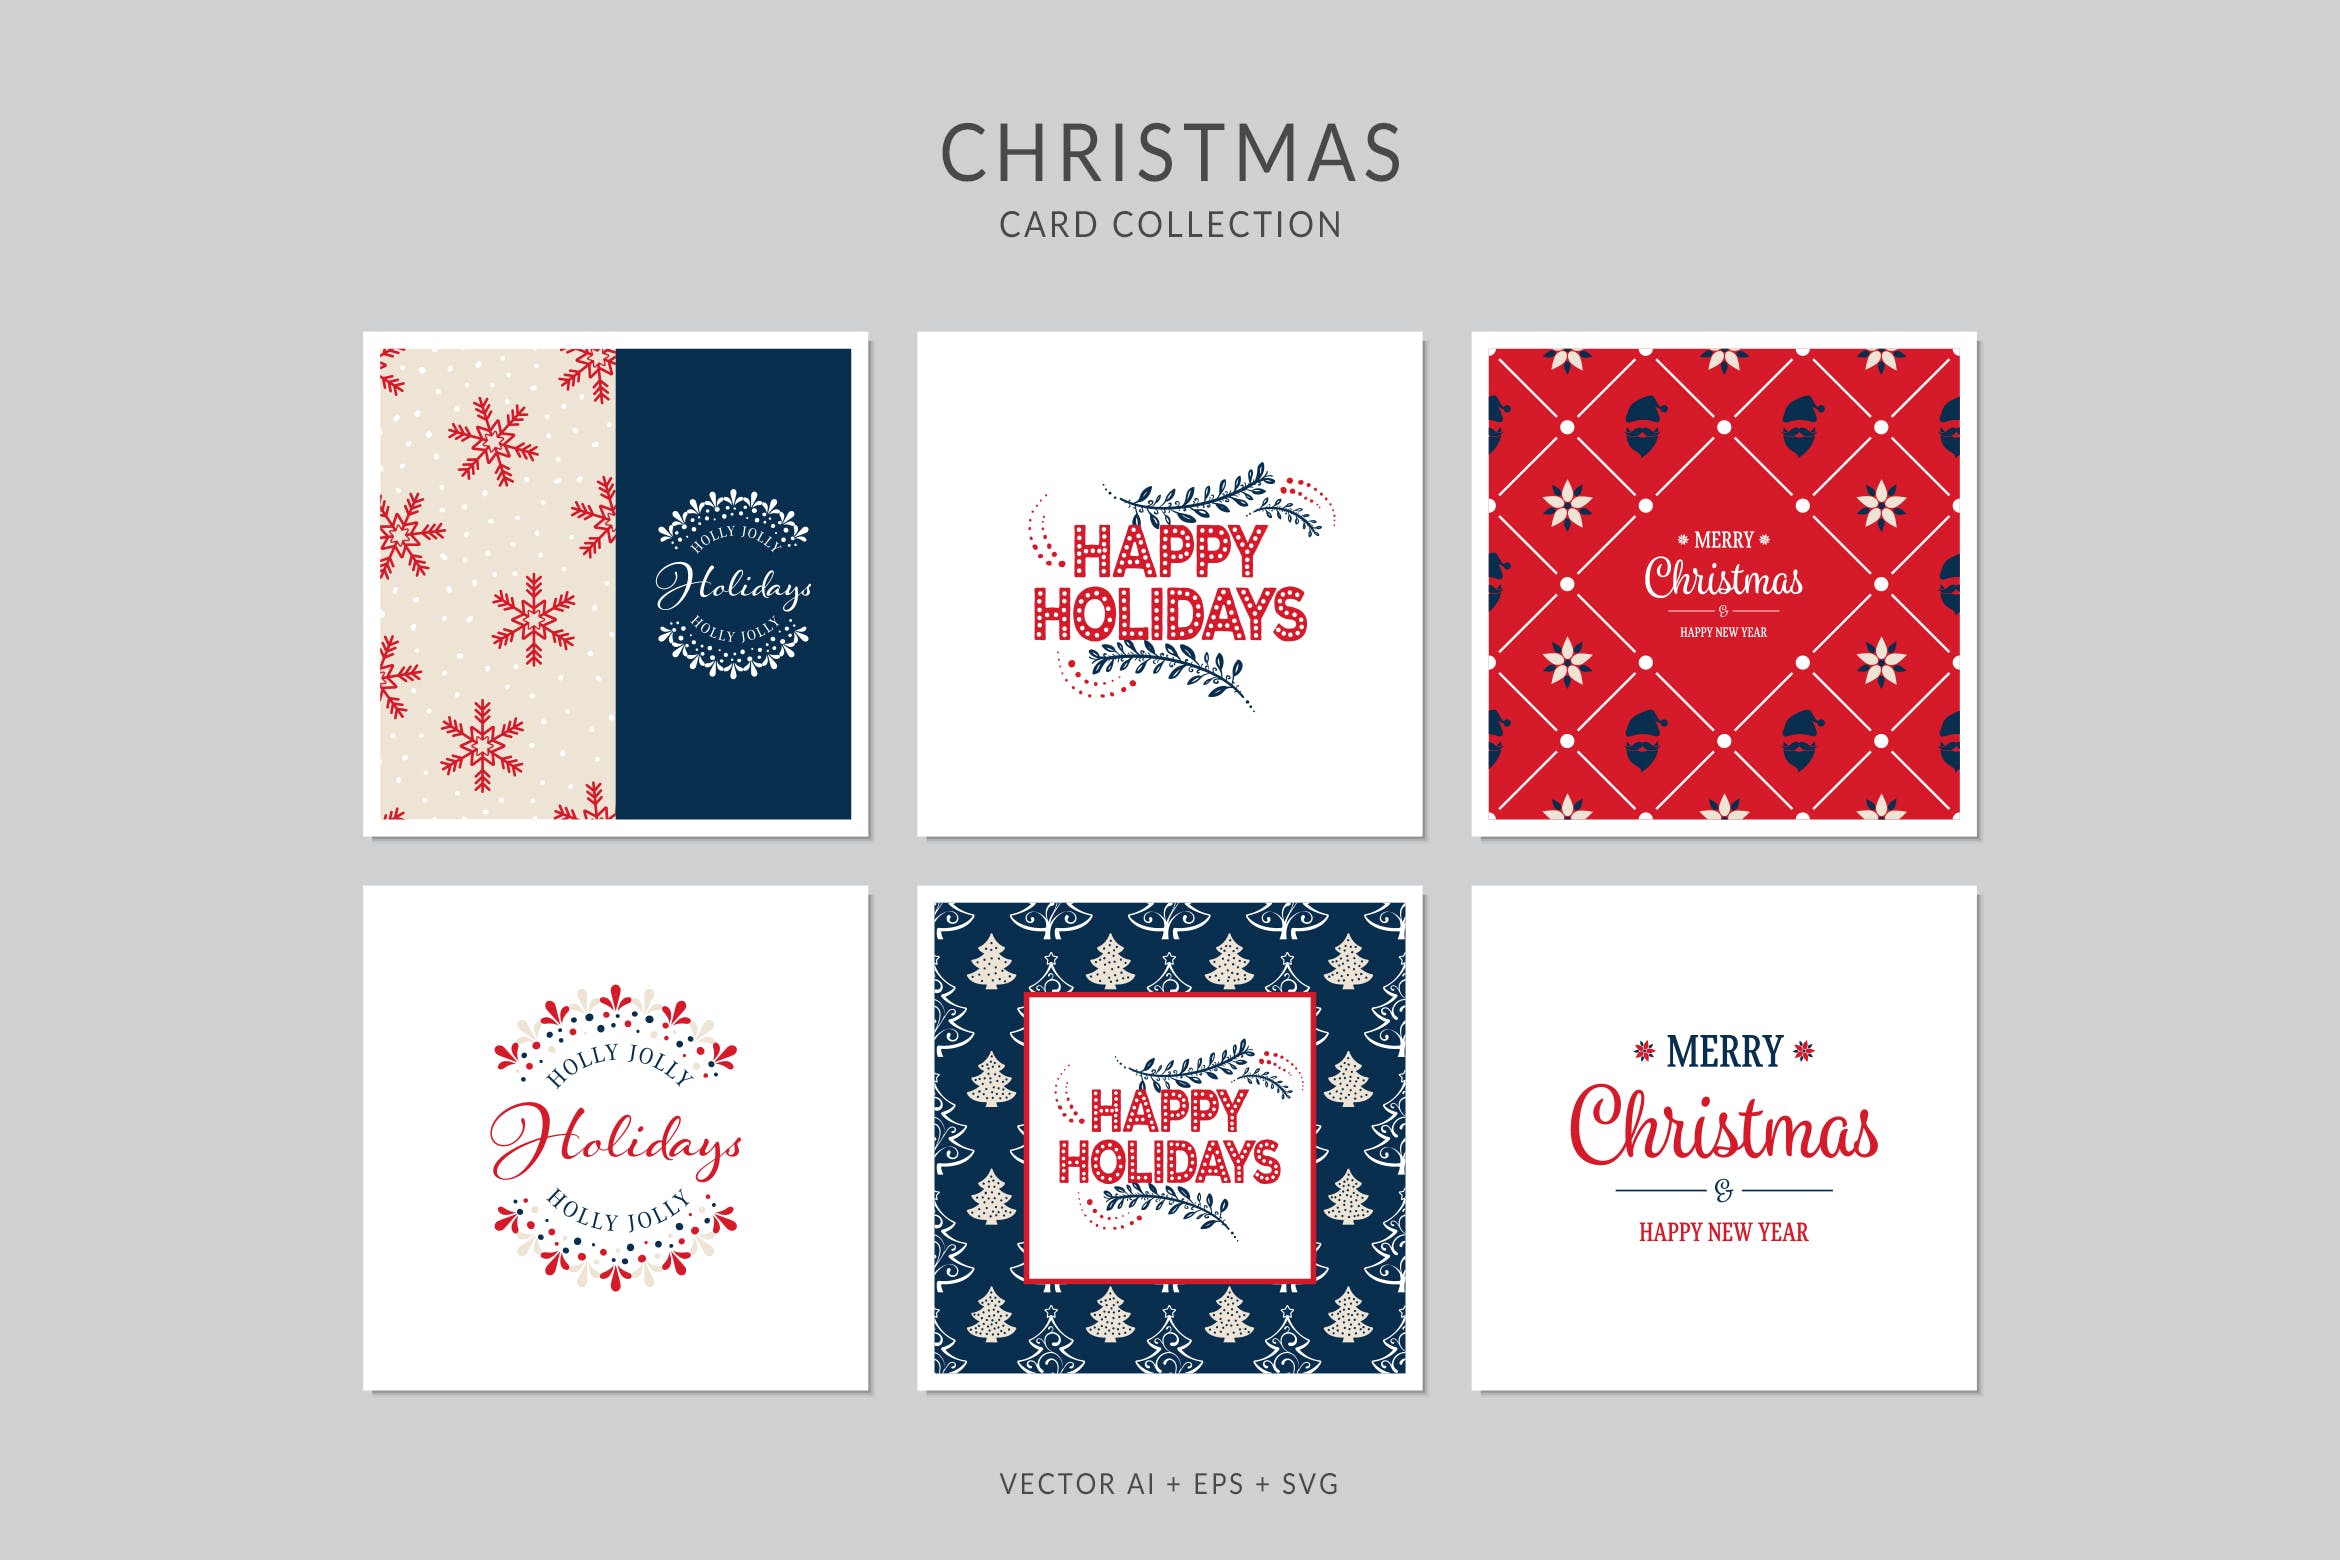 浓厚节日氛围圣诞节贺卡矢量设计模板集v3 Christmas Greeting Card Vector Set插图